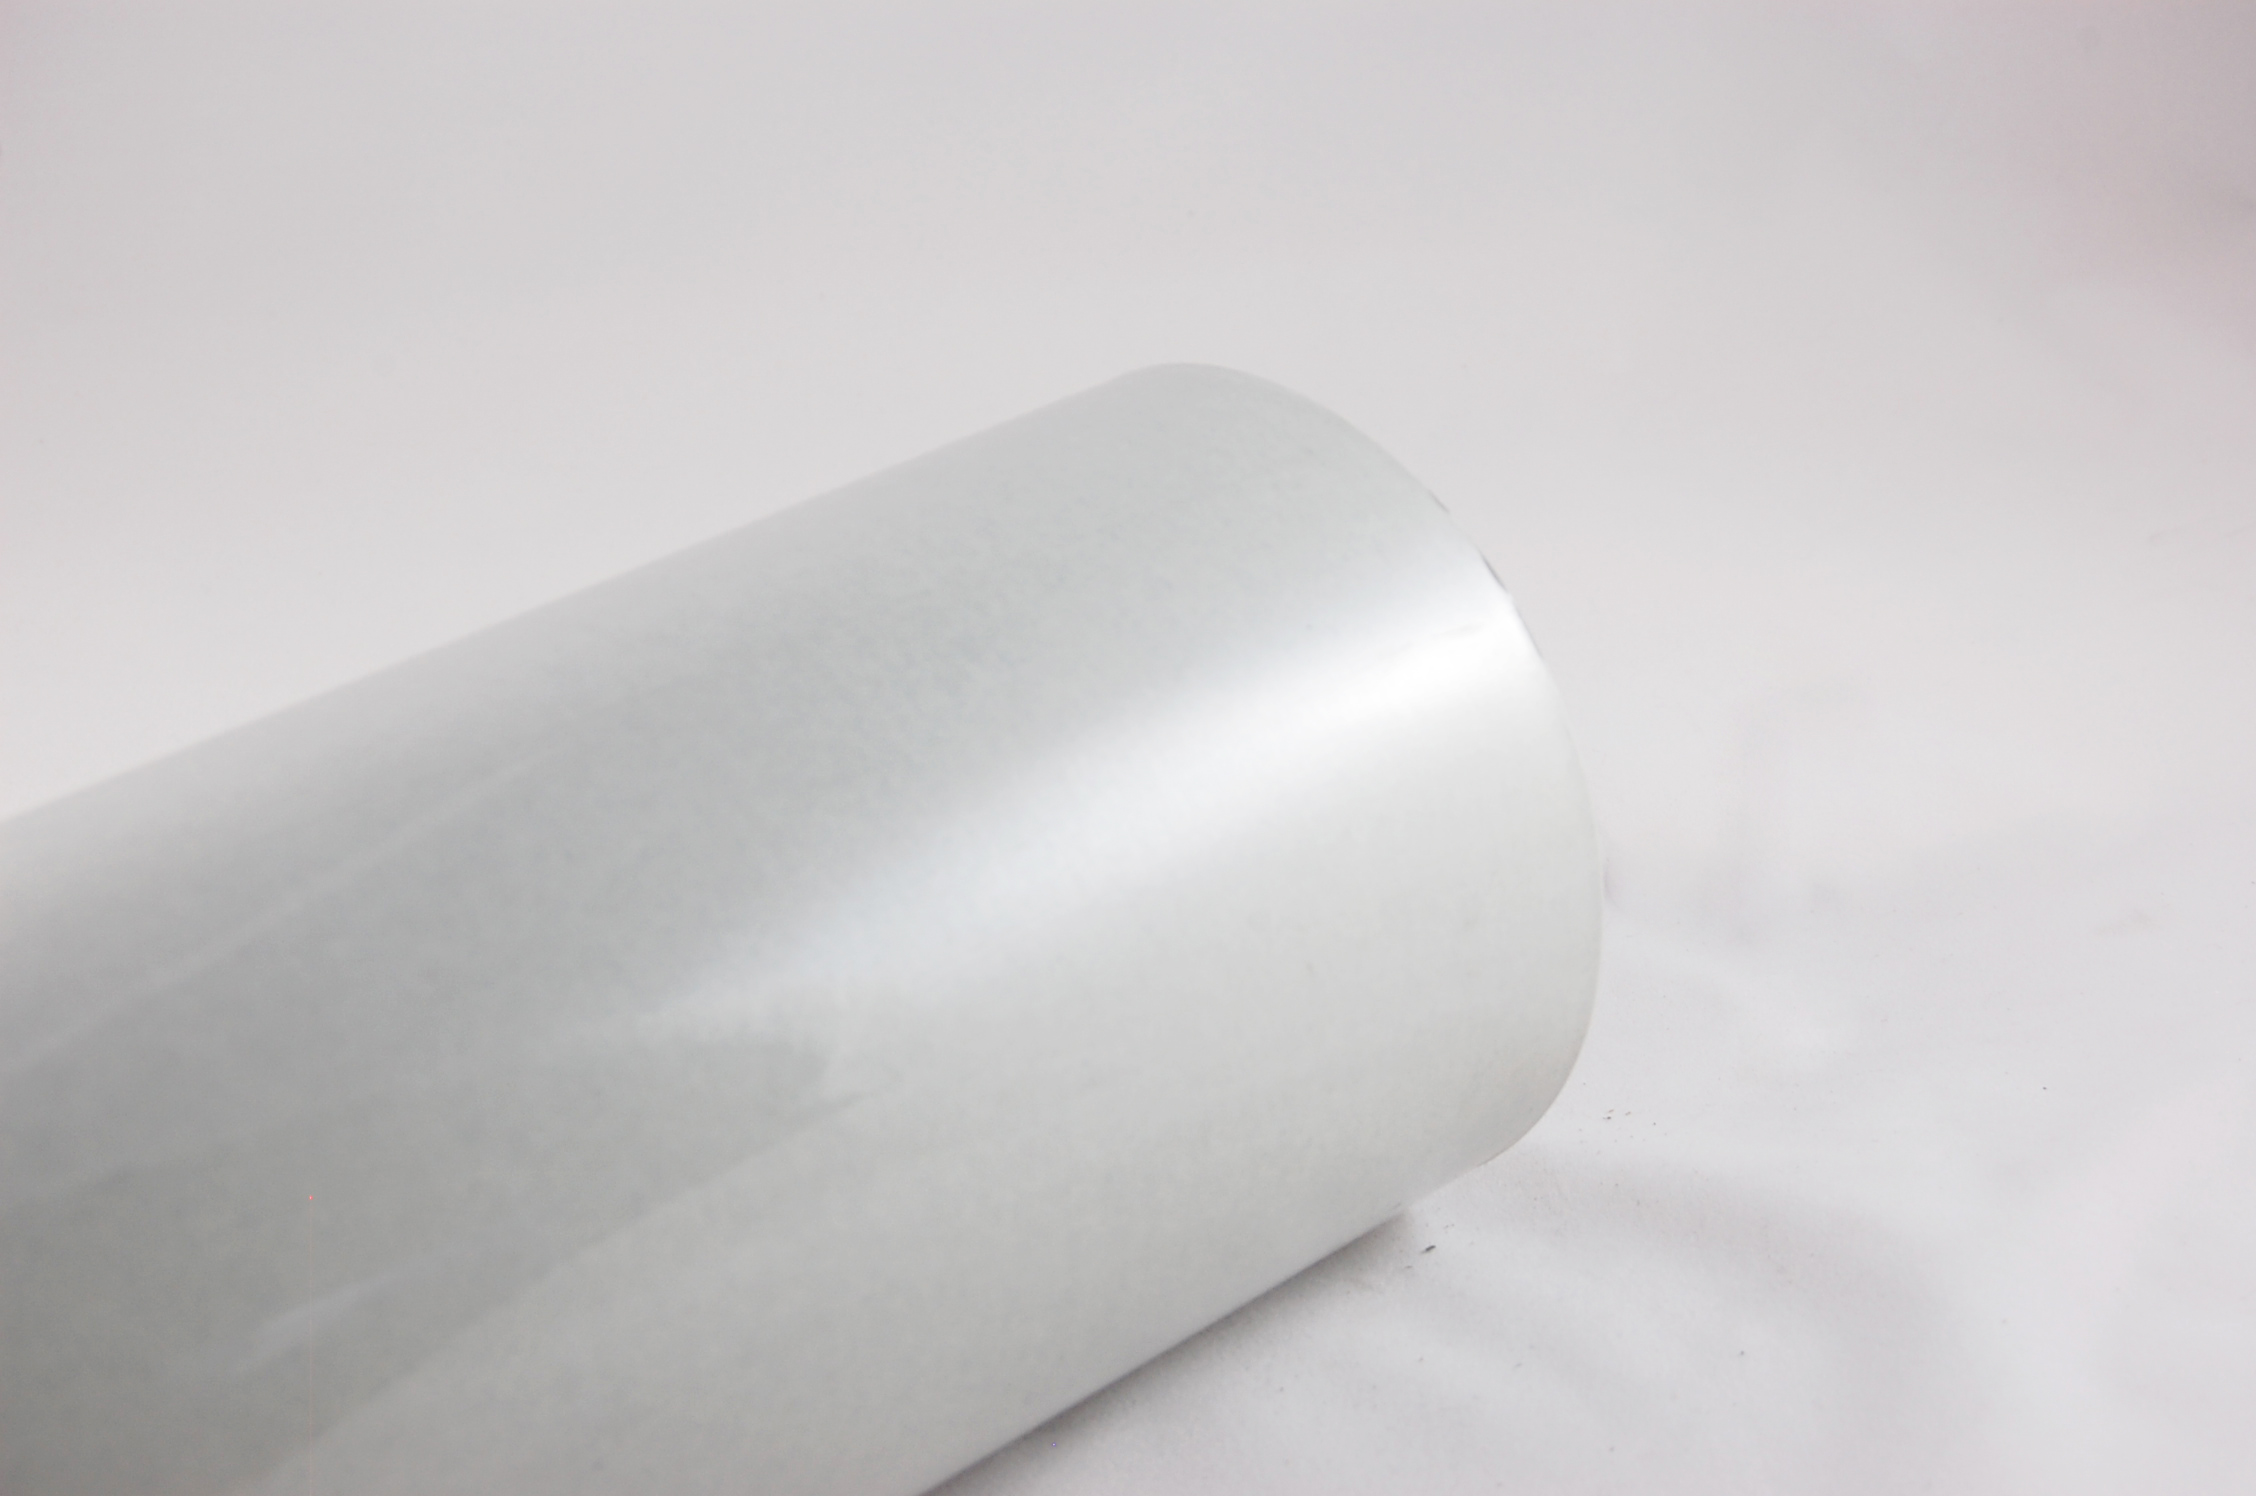 Acuflex® RMR 7-2-7 .016" thick 3-Ply RAG/MYLAR/RAG Flexible Laminate 130°C, gray, 36" wide x  250 SY roll